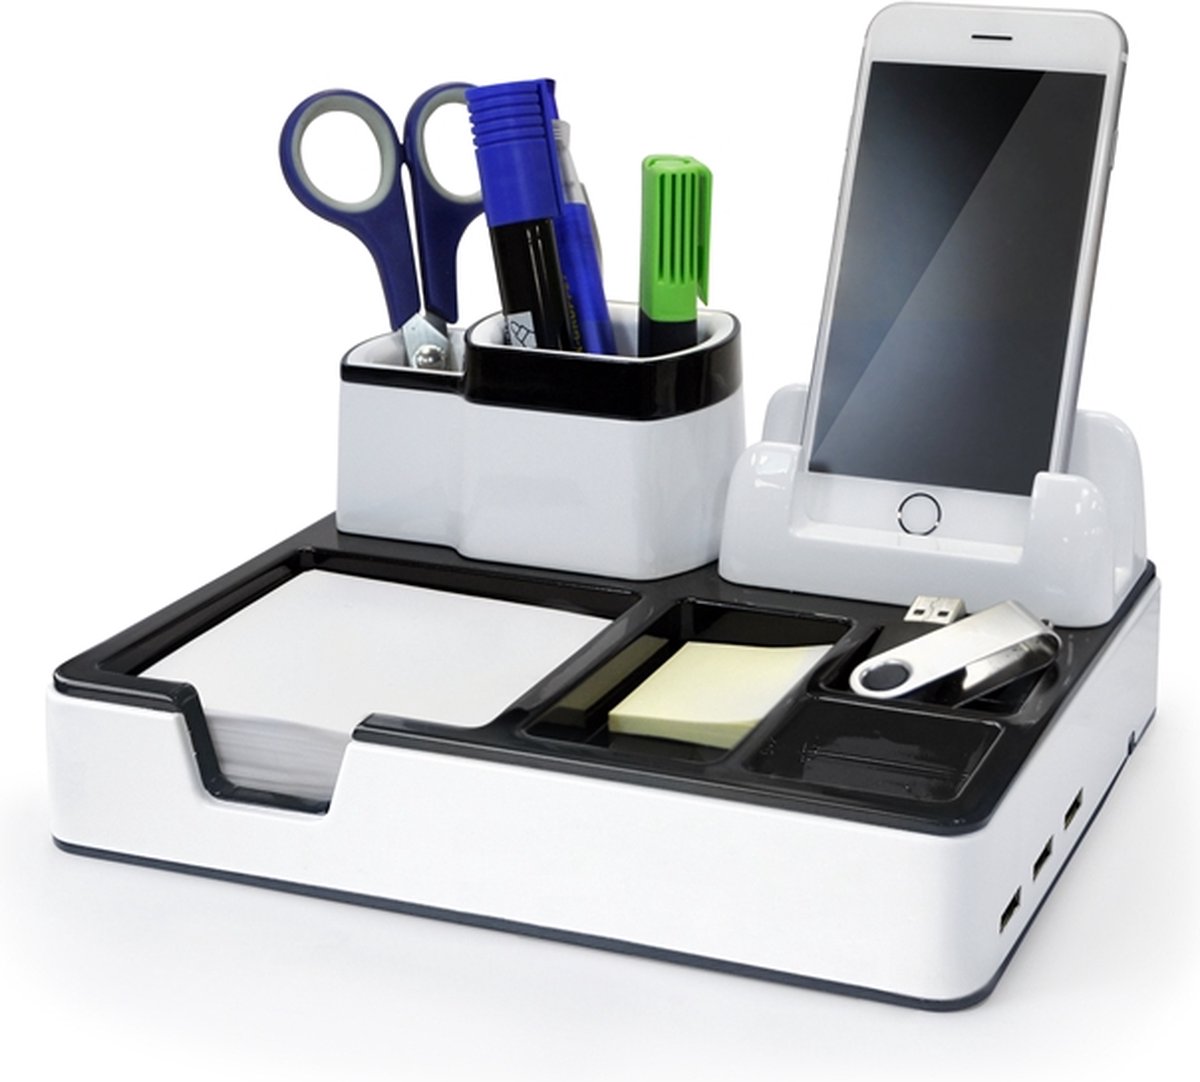 Monolith Desk Organizer wit met 3 USB poorten voor het opladen van smartphones of tablets